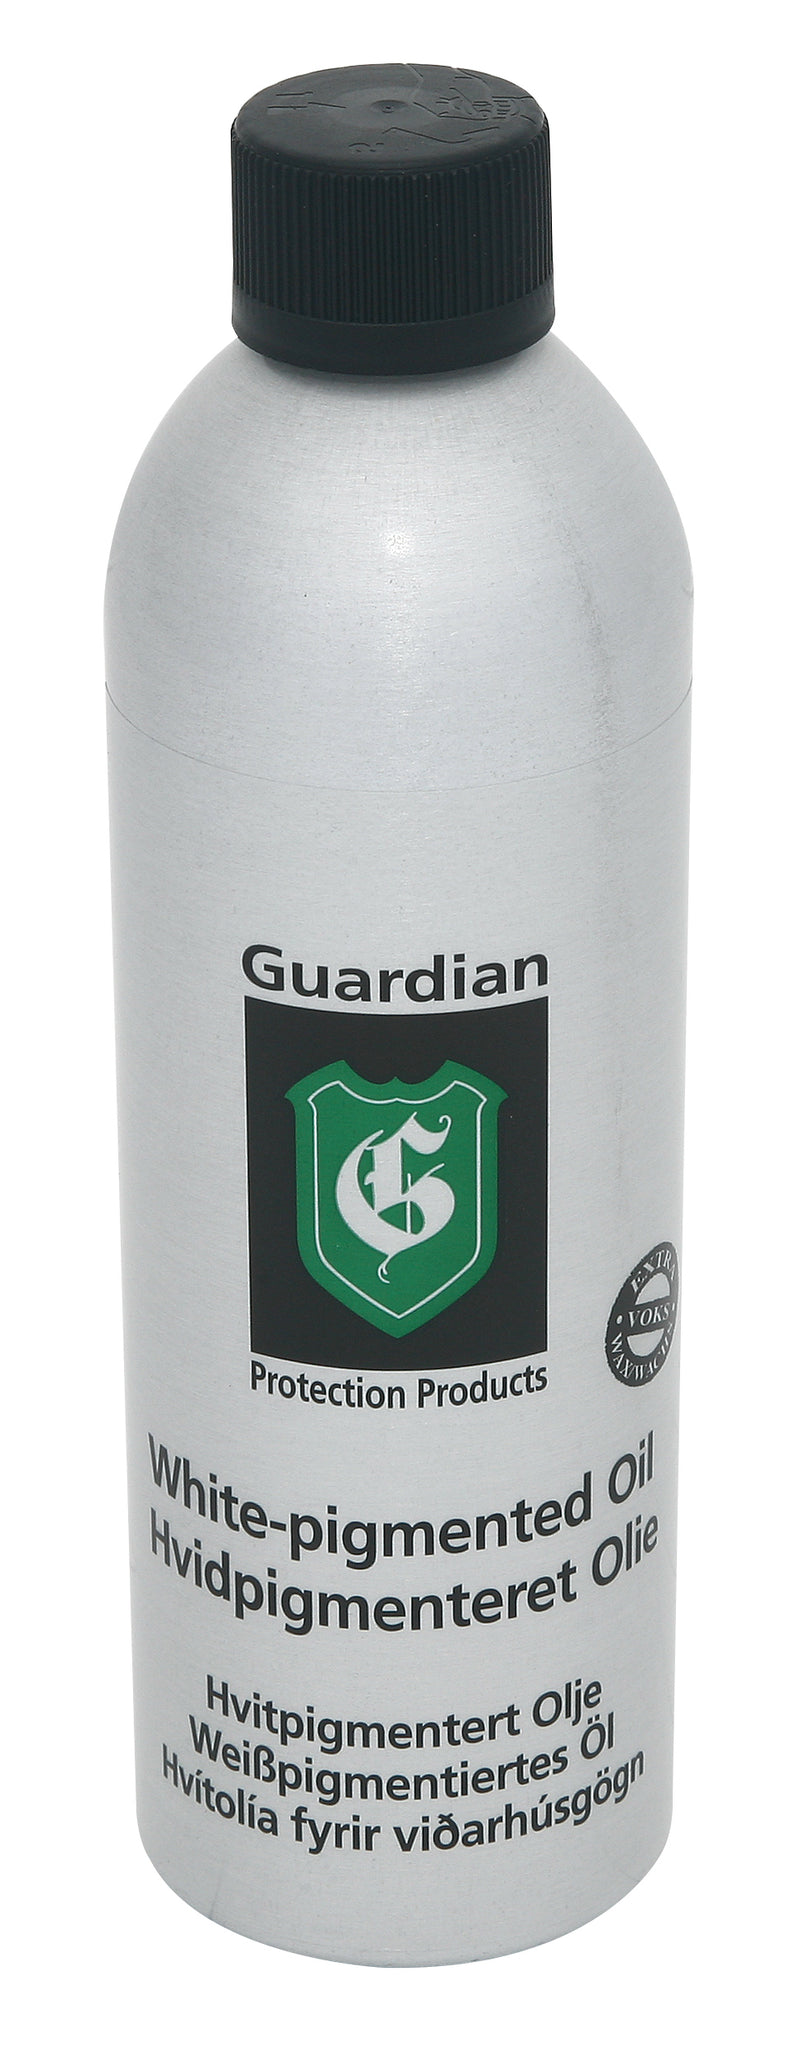 Guardian hvidpigmenteret olie